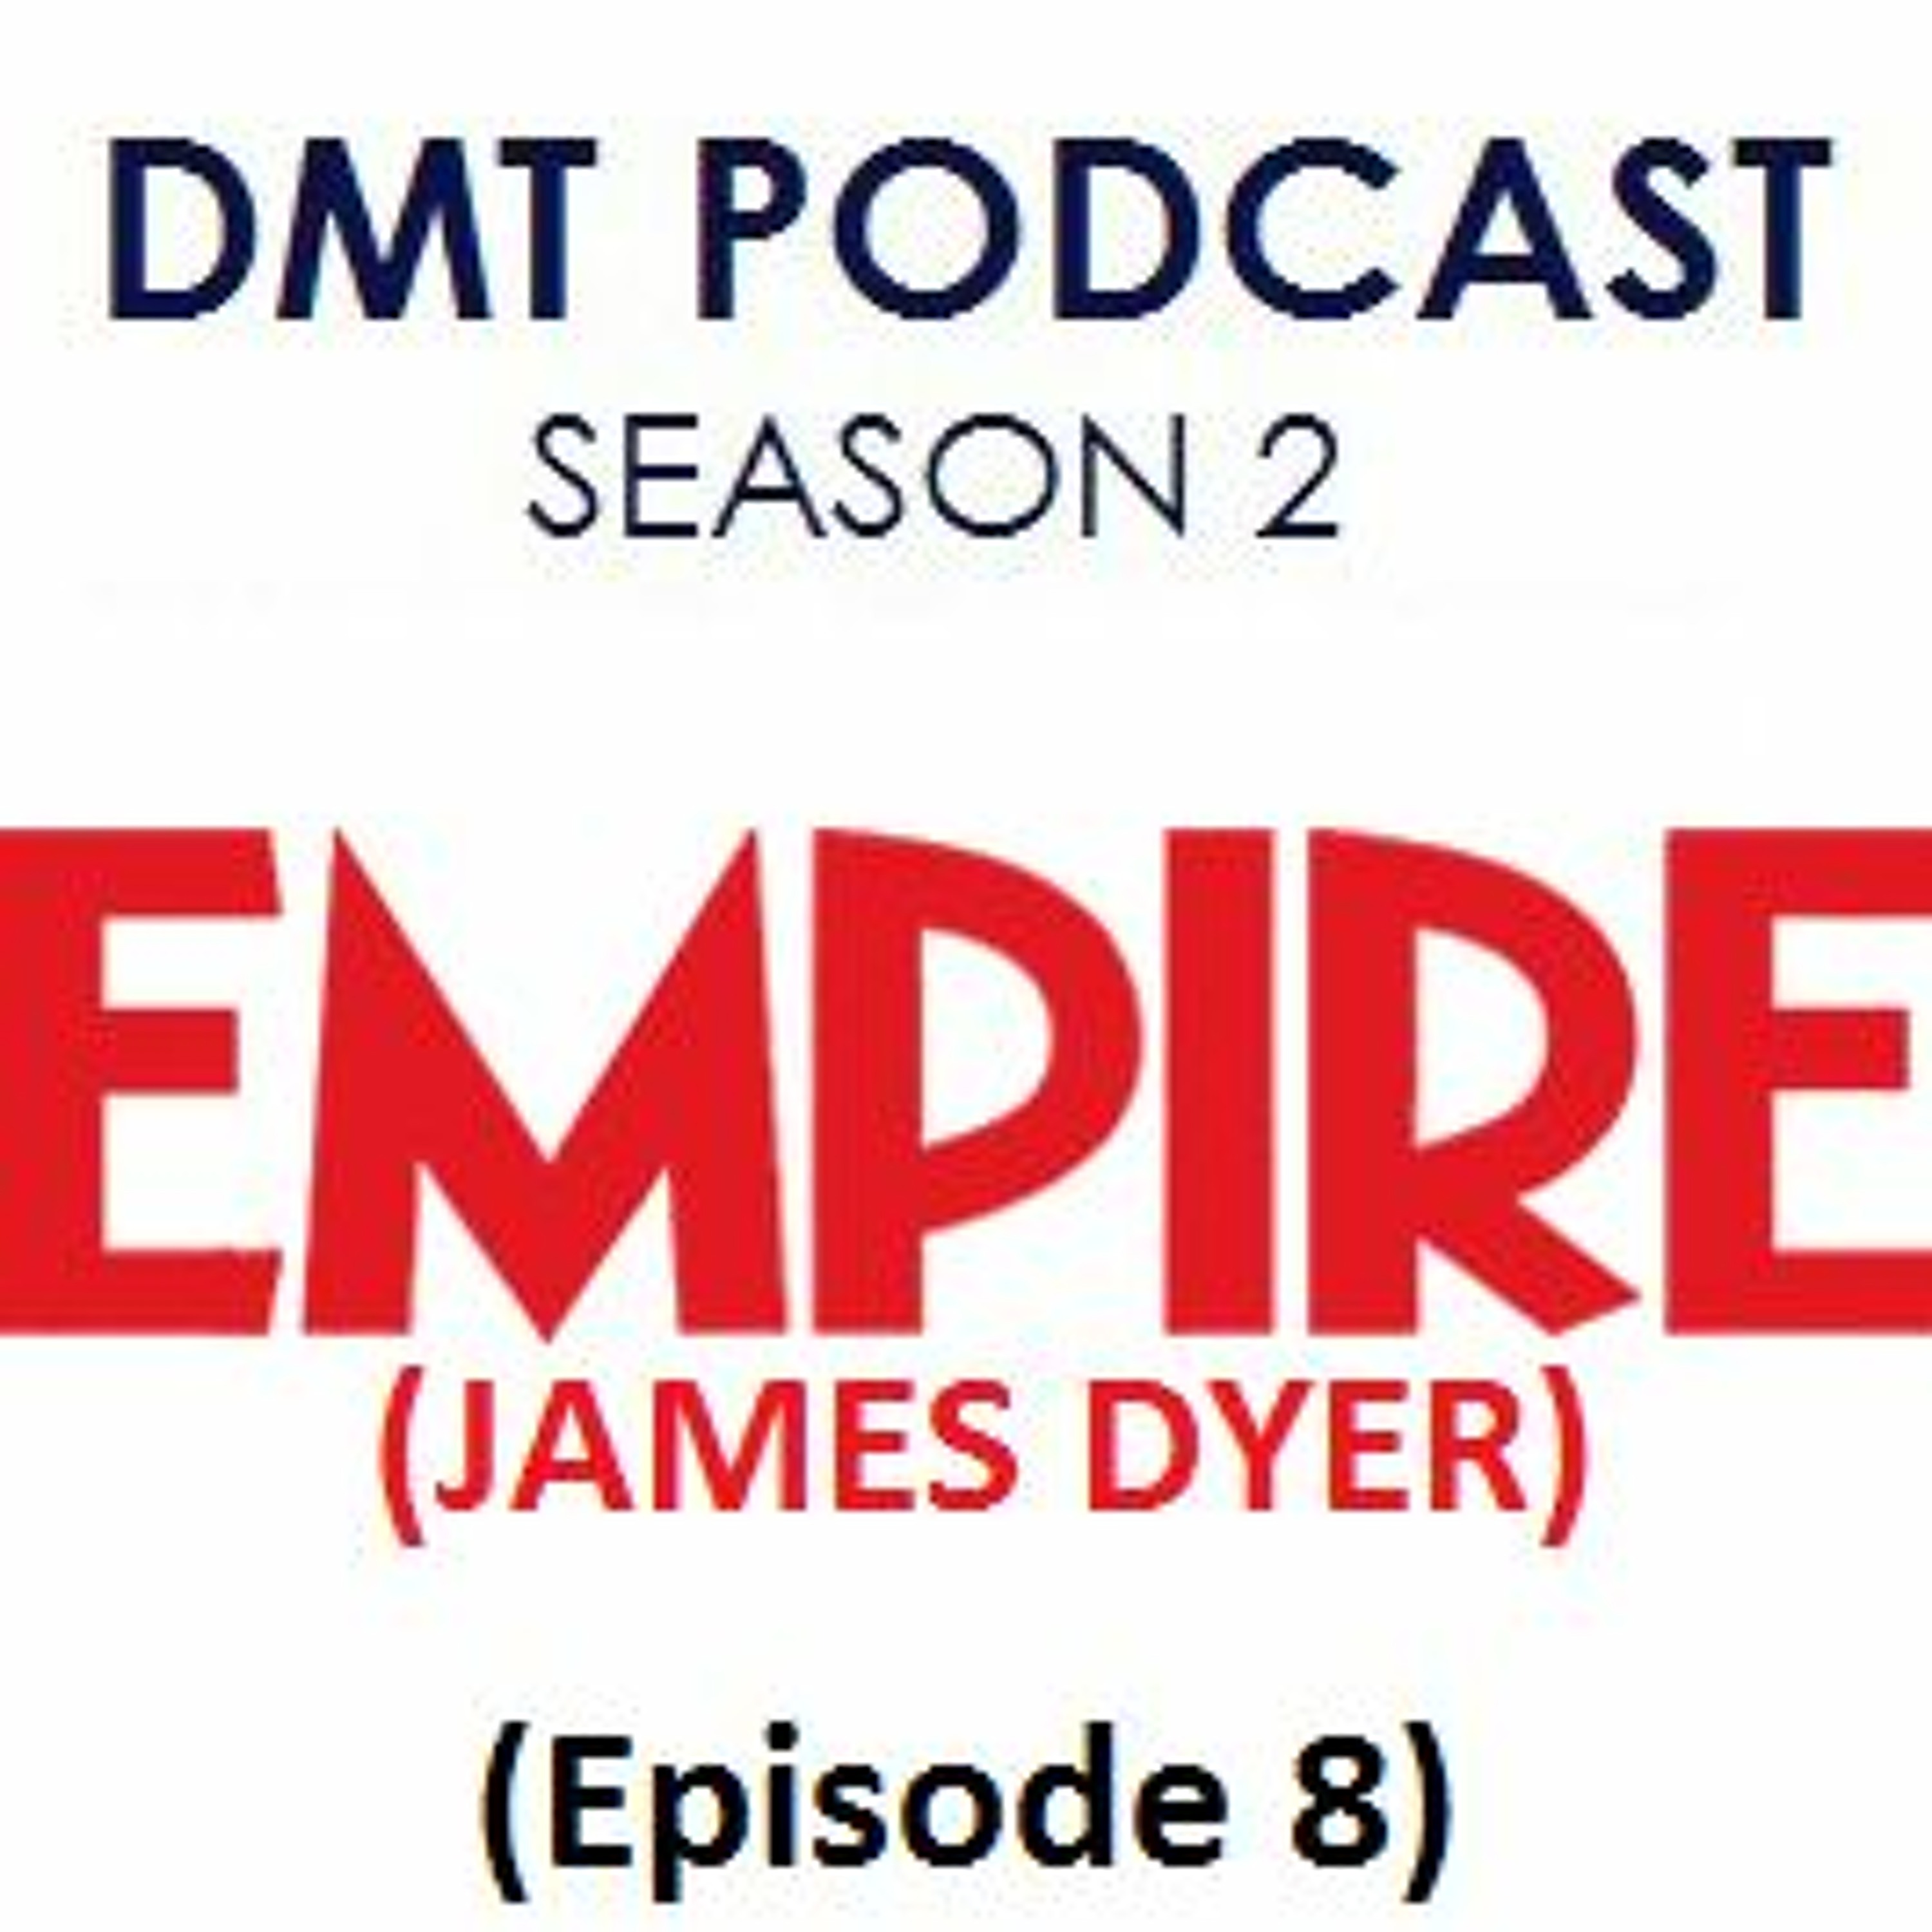 Empire Magazine's James Dyer | DMT Podcast Archive